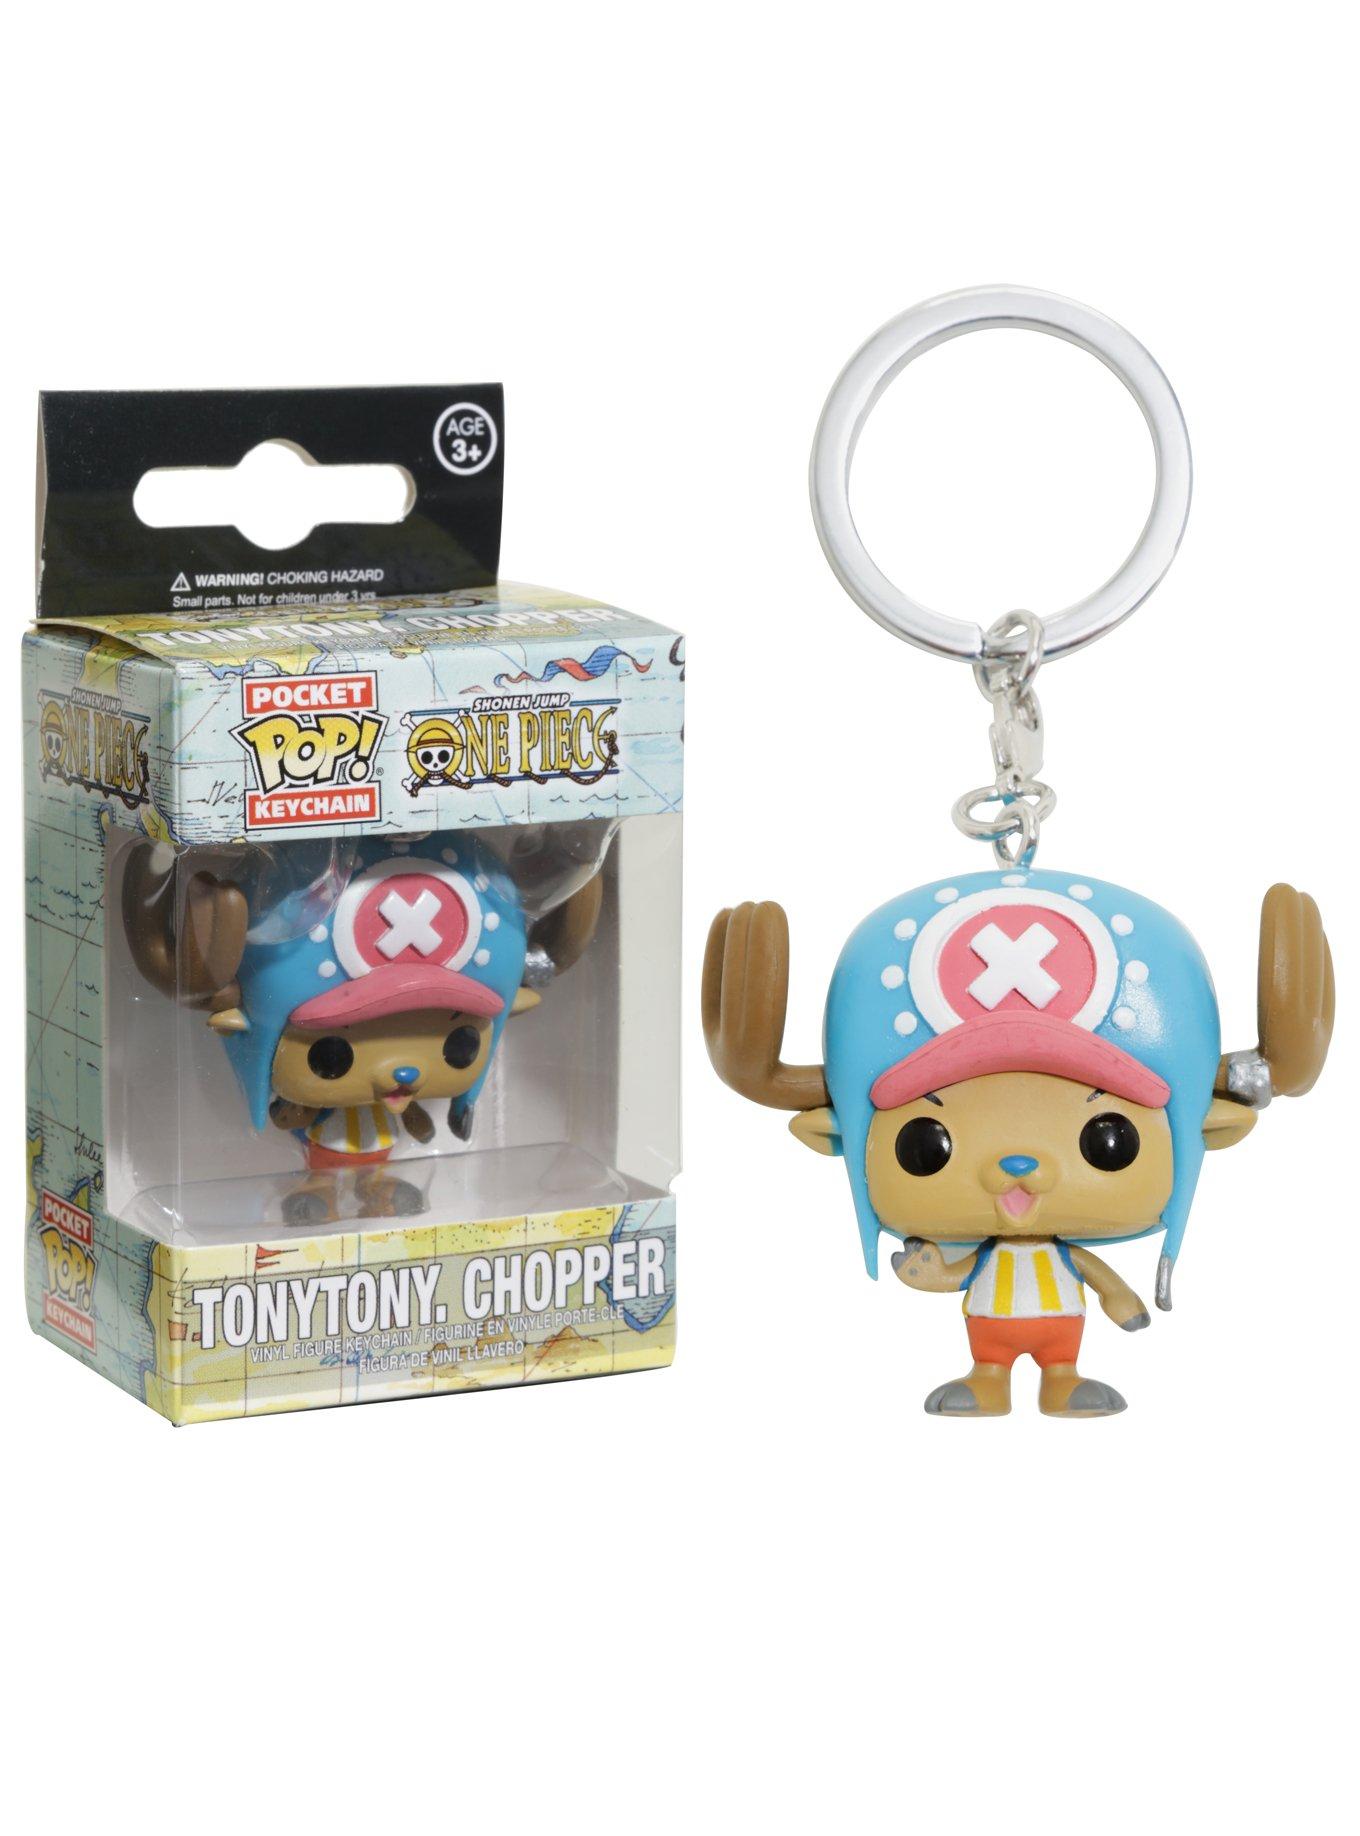 Sudan magasin isolation Funko One Piece Pocket Pop! Tony Tony Chopper Key Chain | Hot Topic